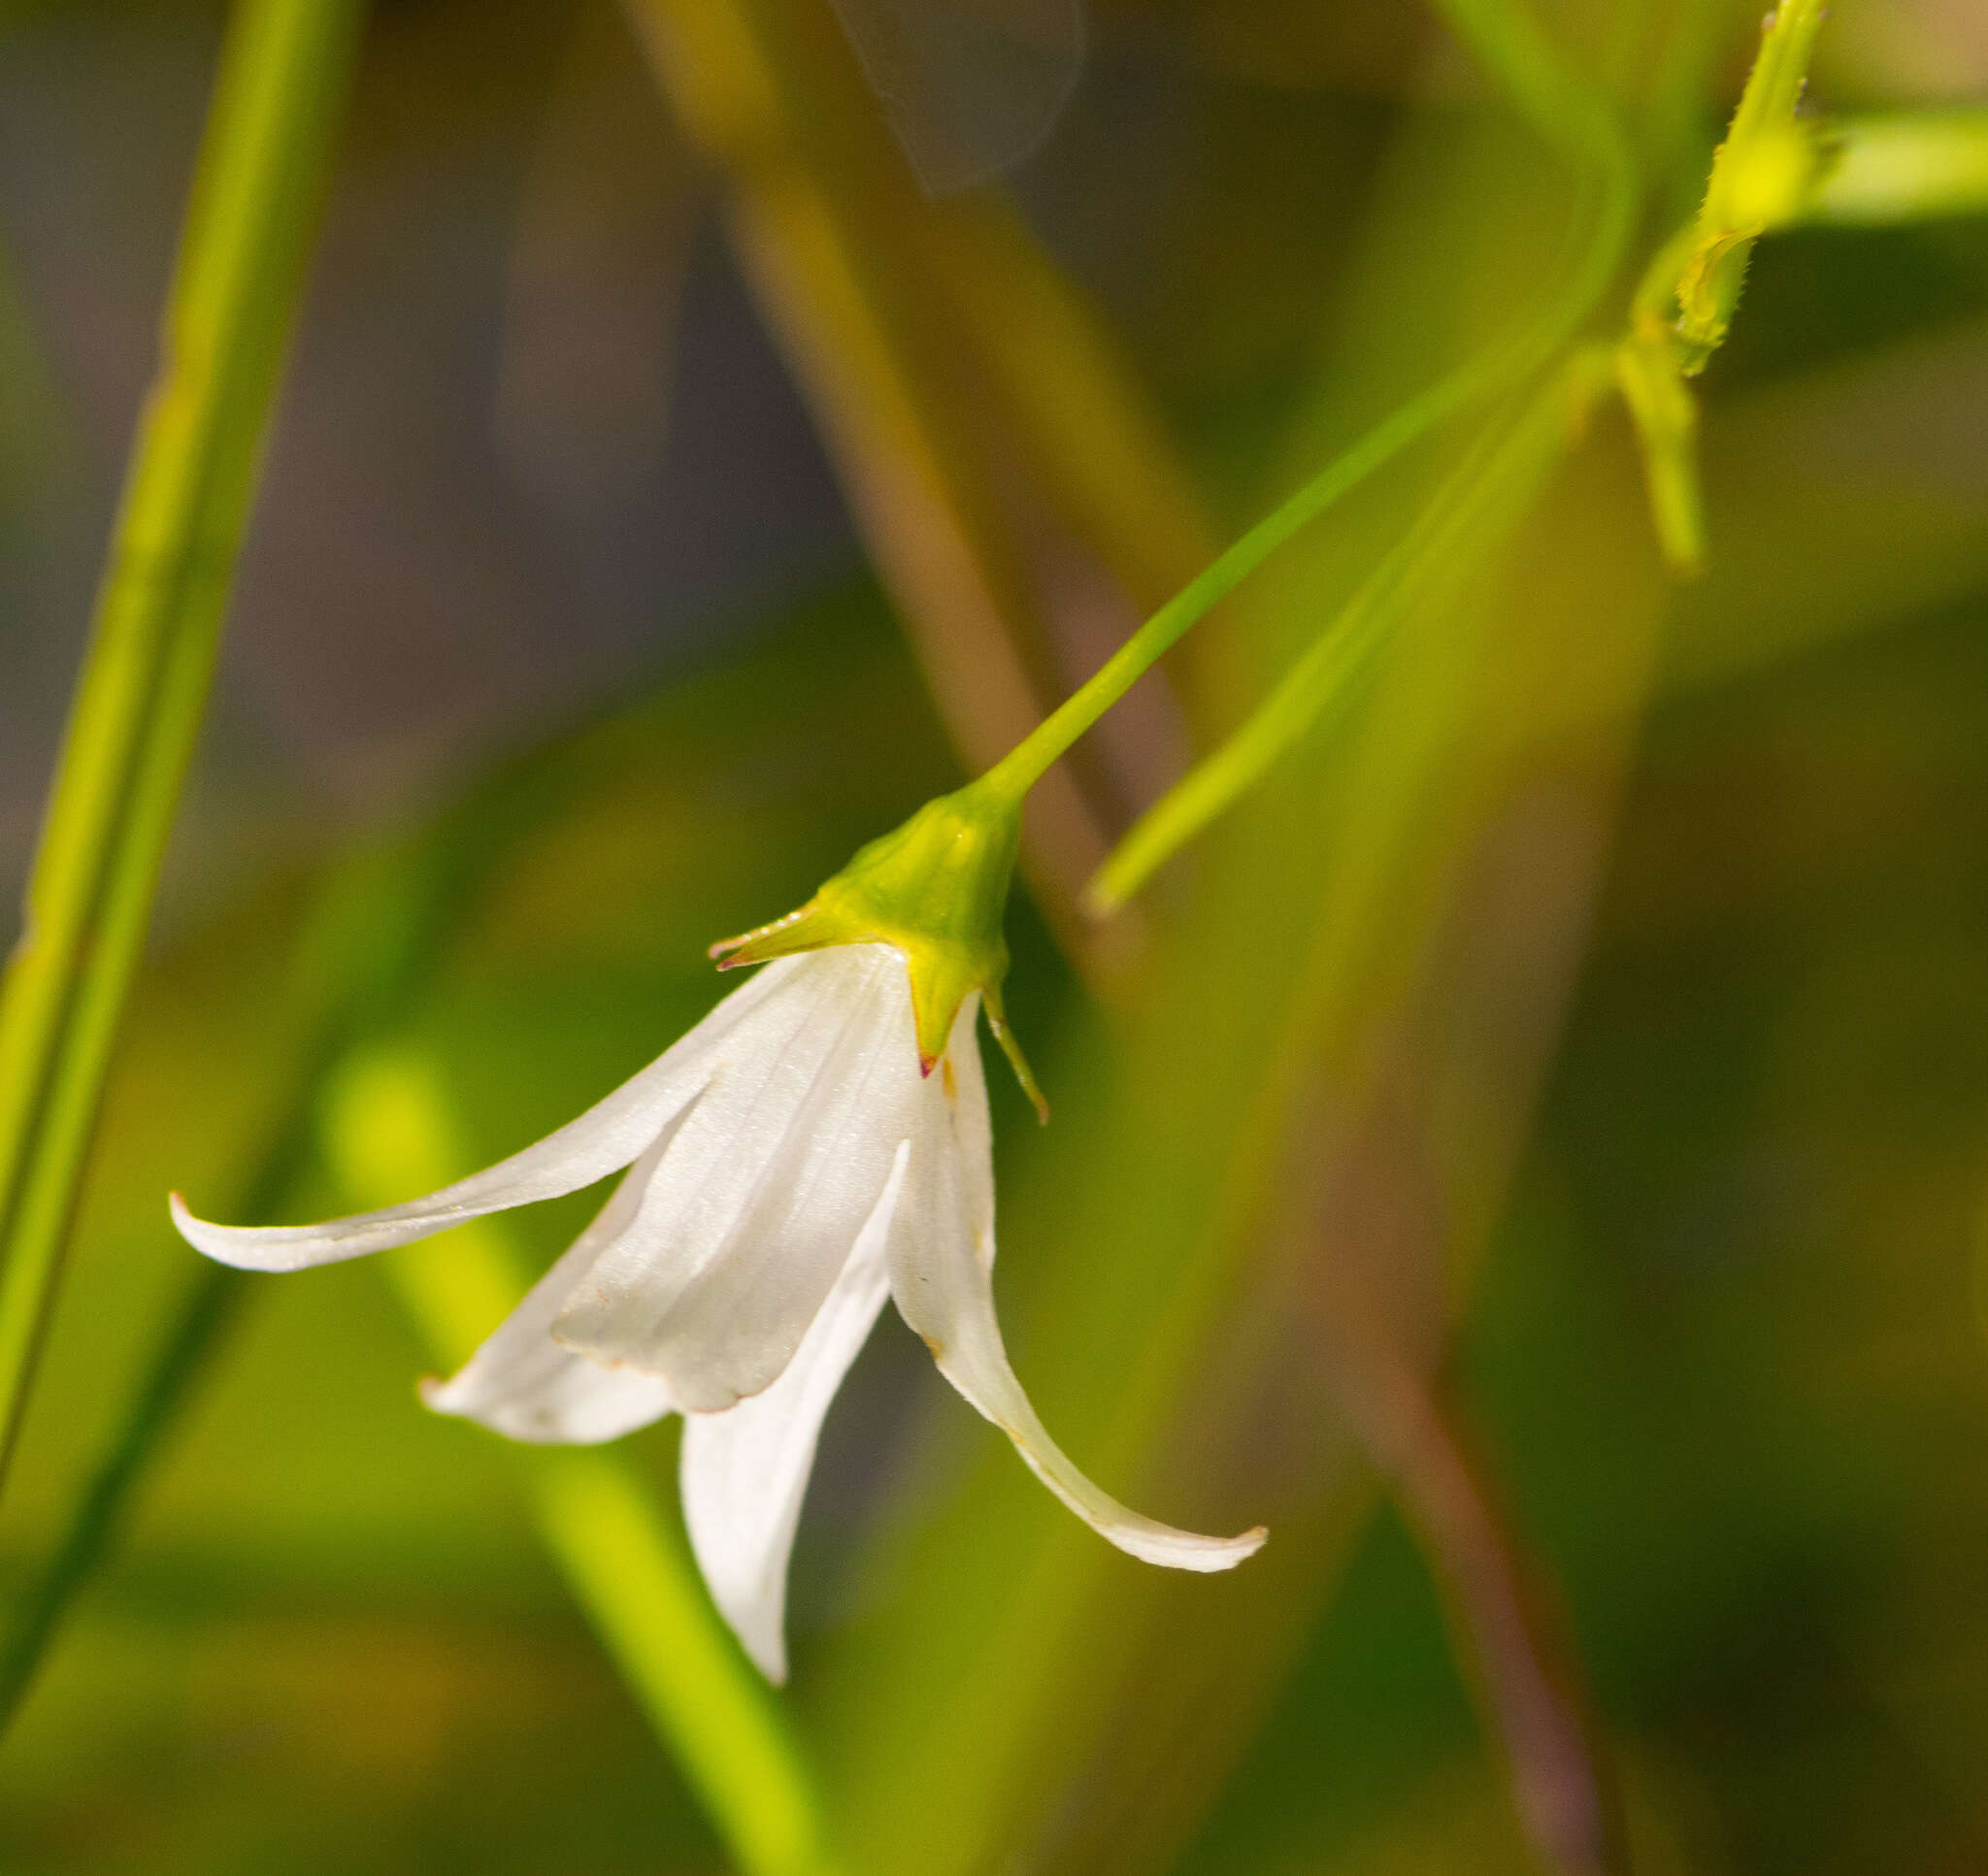 Image of Marsh Bellflower